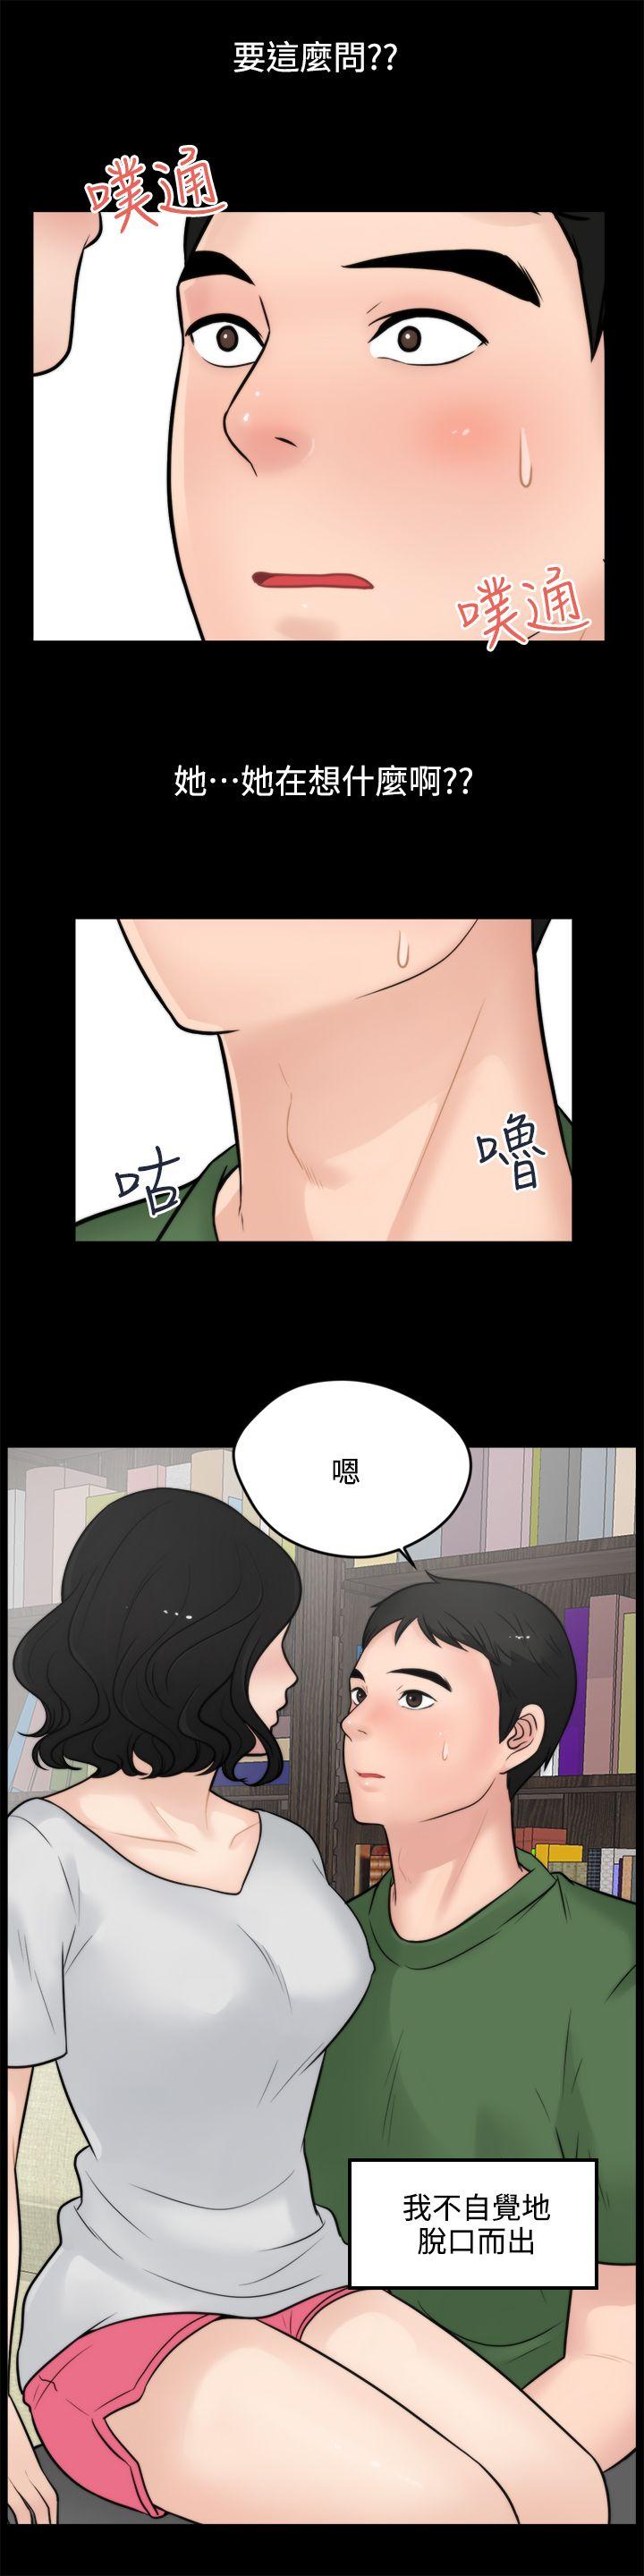 韩国污漫画 偷偷愛 第5话 3